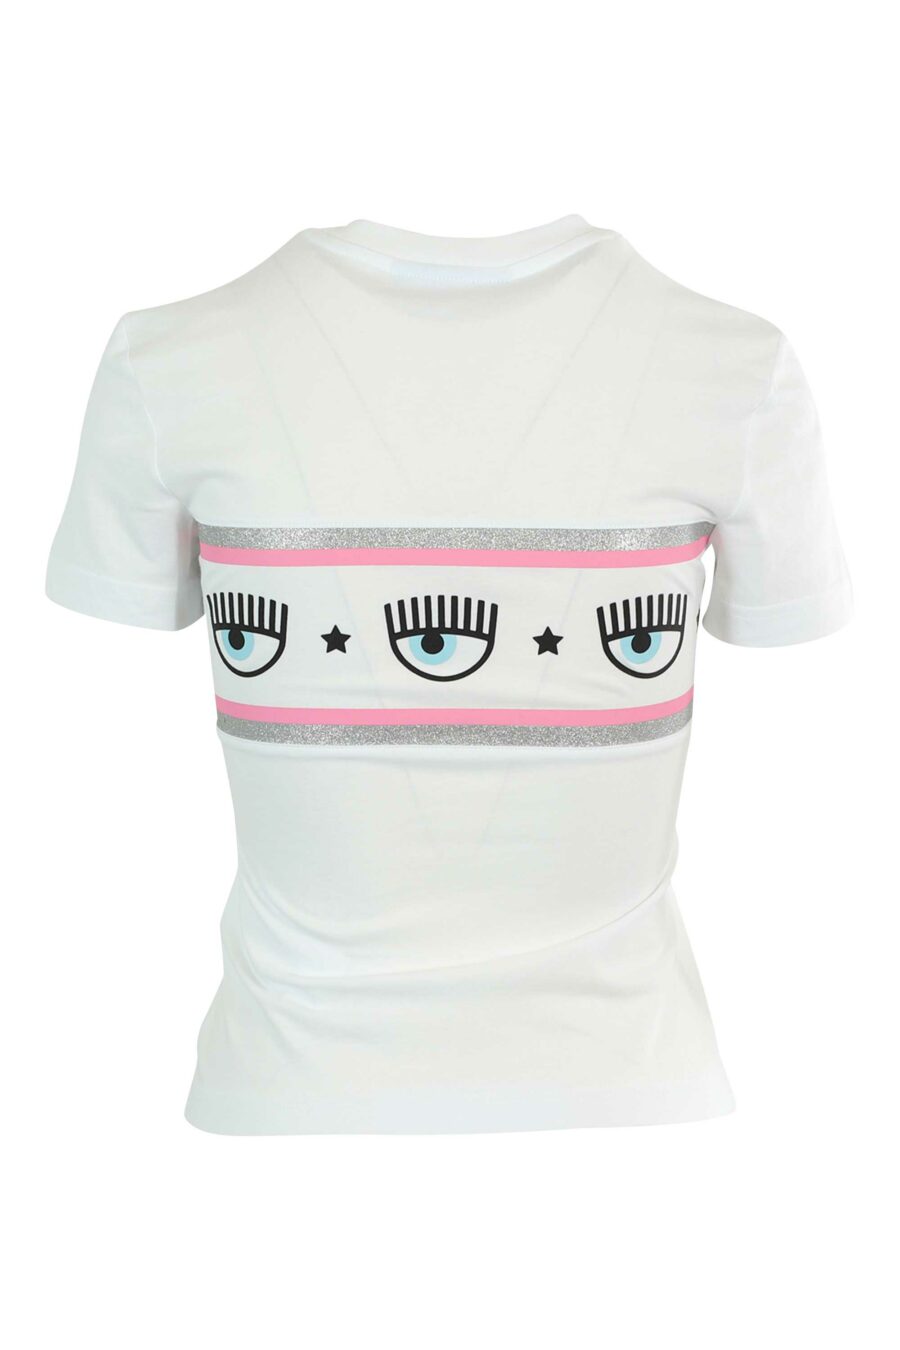 Weißes T-Shirt mit Augenlogo auf Band - 8052672419835 2